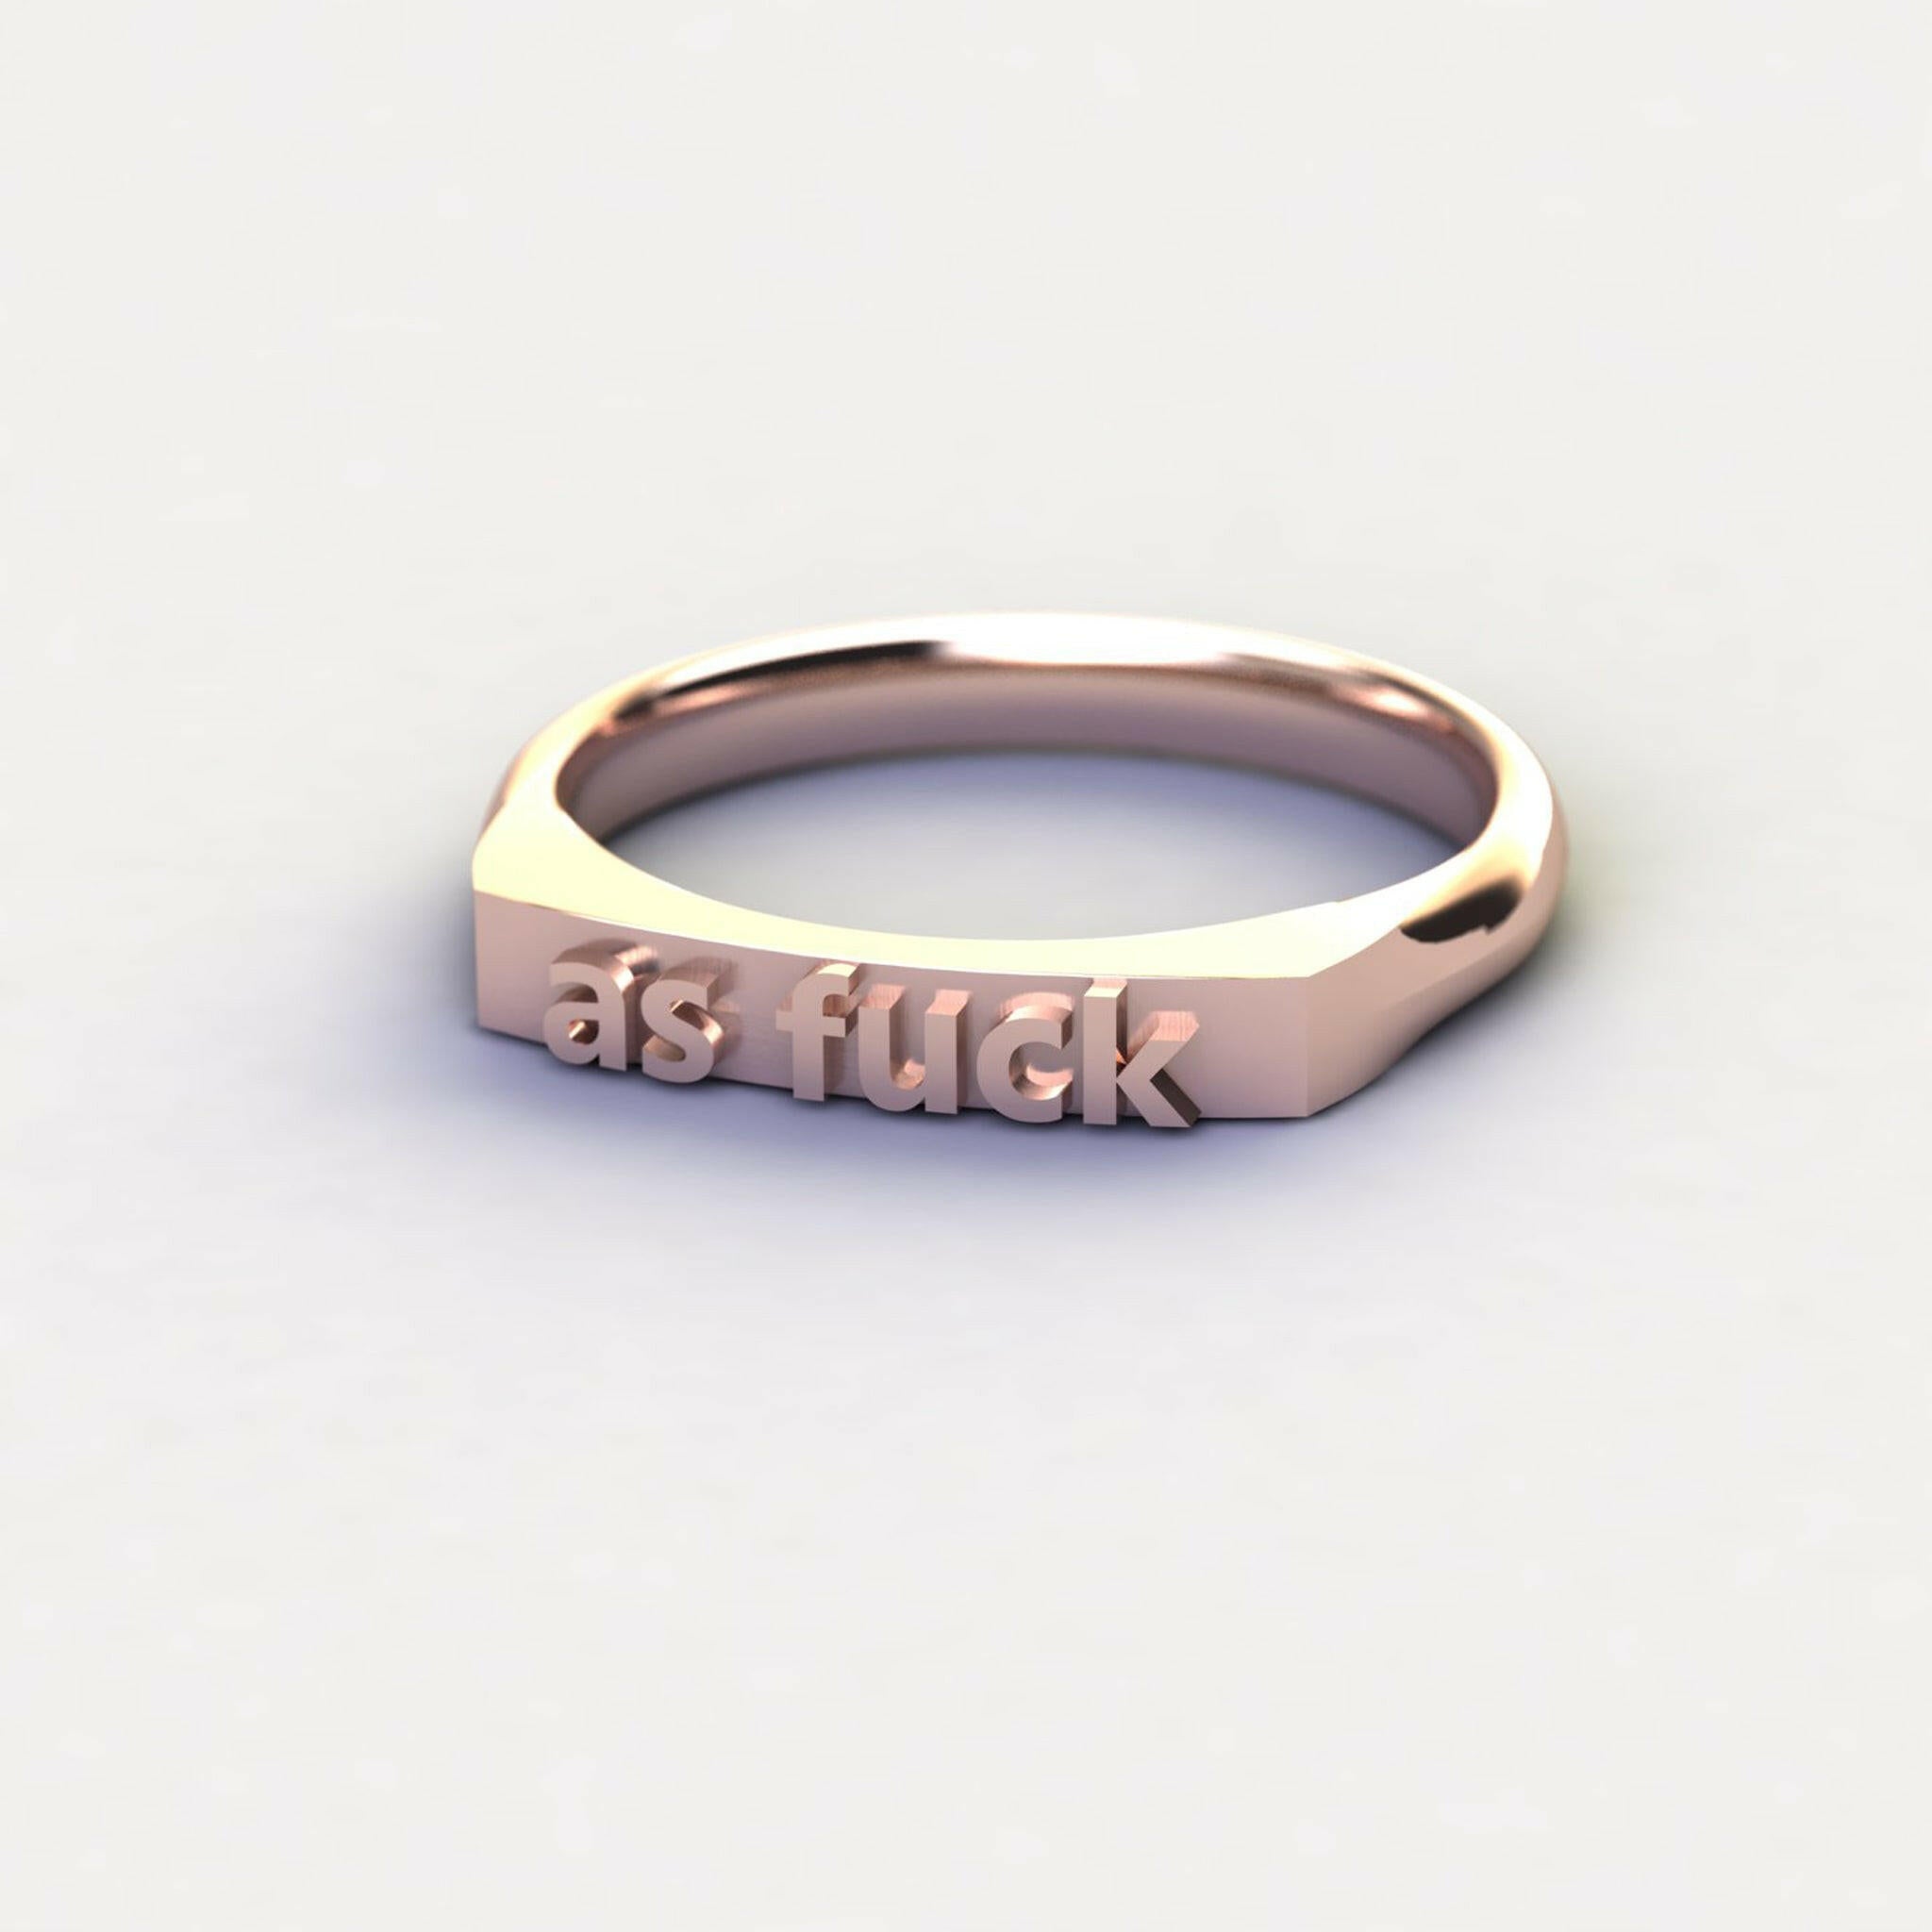 as fuck - Ilah Cibis Jewelry-Rings